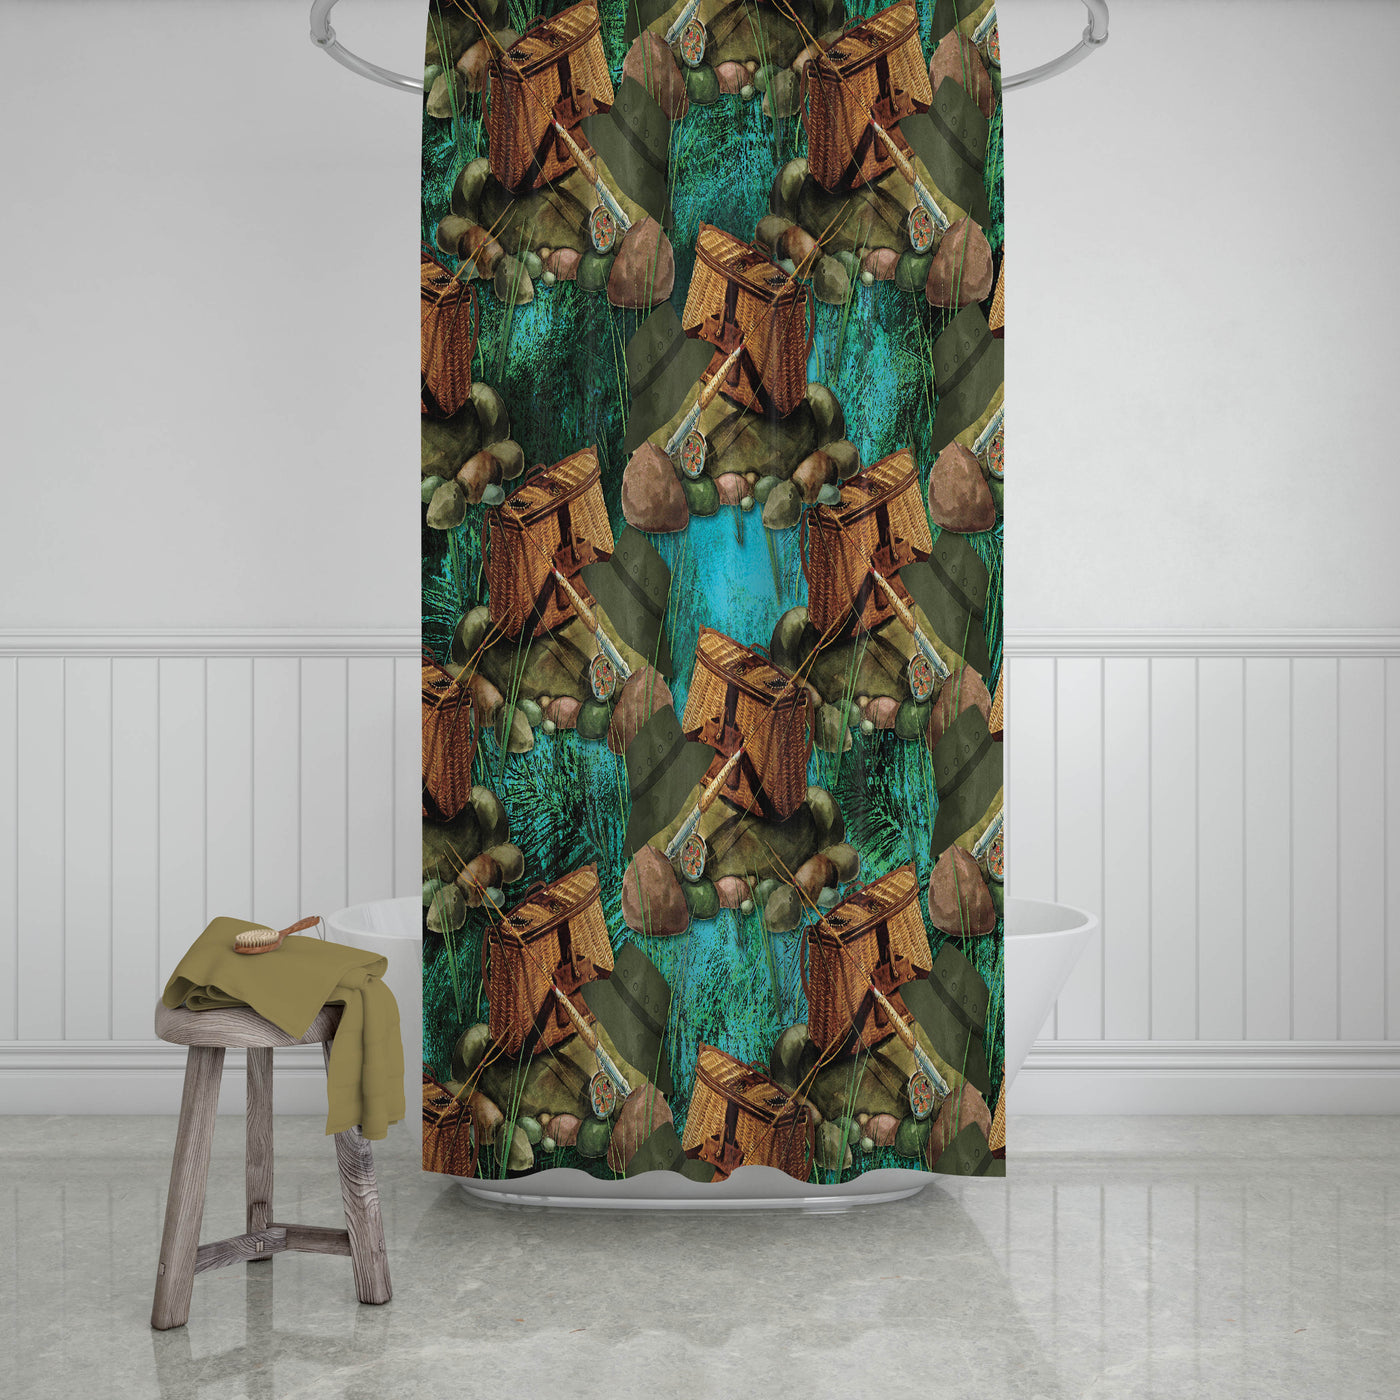 Fishing Gear Lodge Bathroom Decor Shower Curtain and Bath Accessories –  Folk N Funky